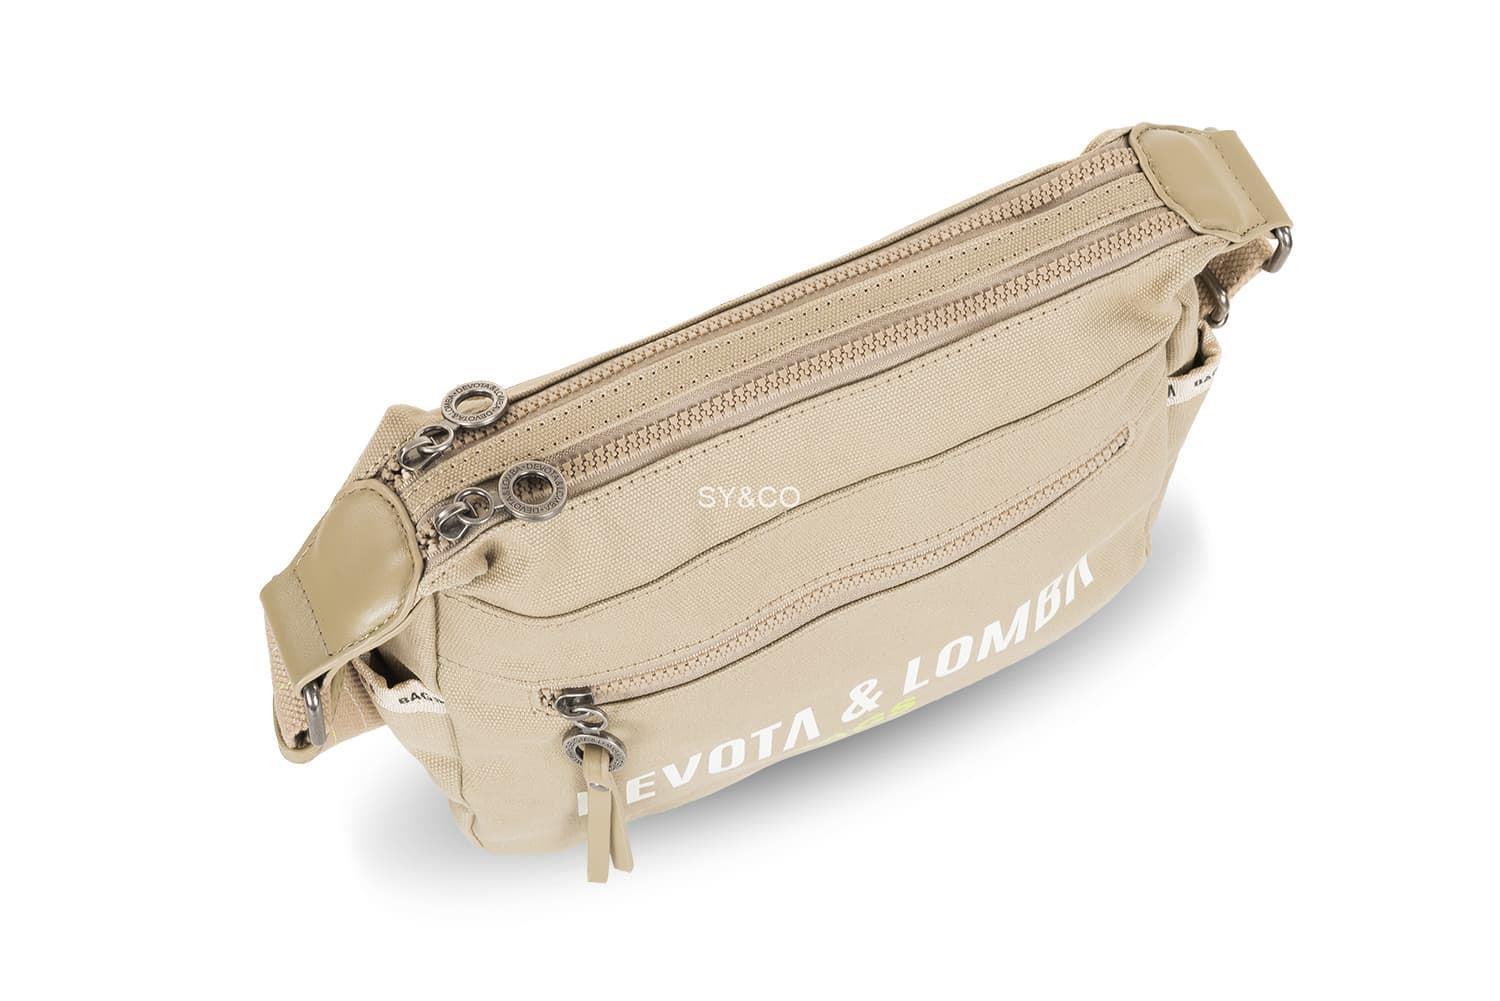 Bandolera doble compartimento Devota & Lomba lona beige Title - Imagen 4